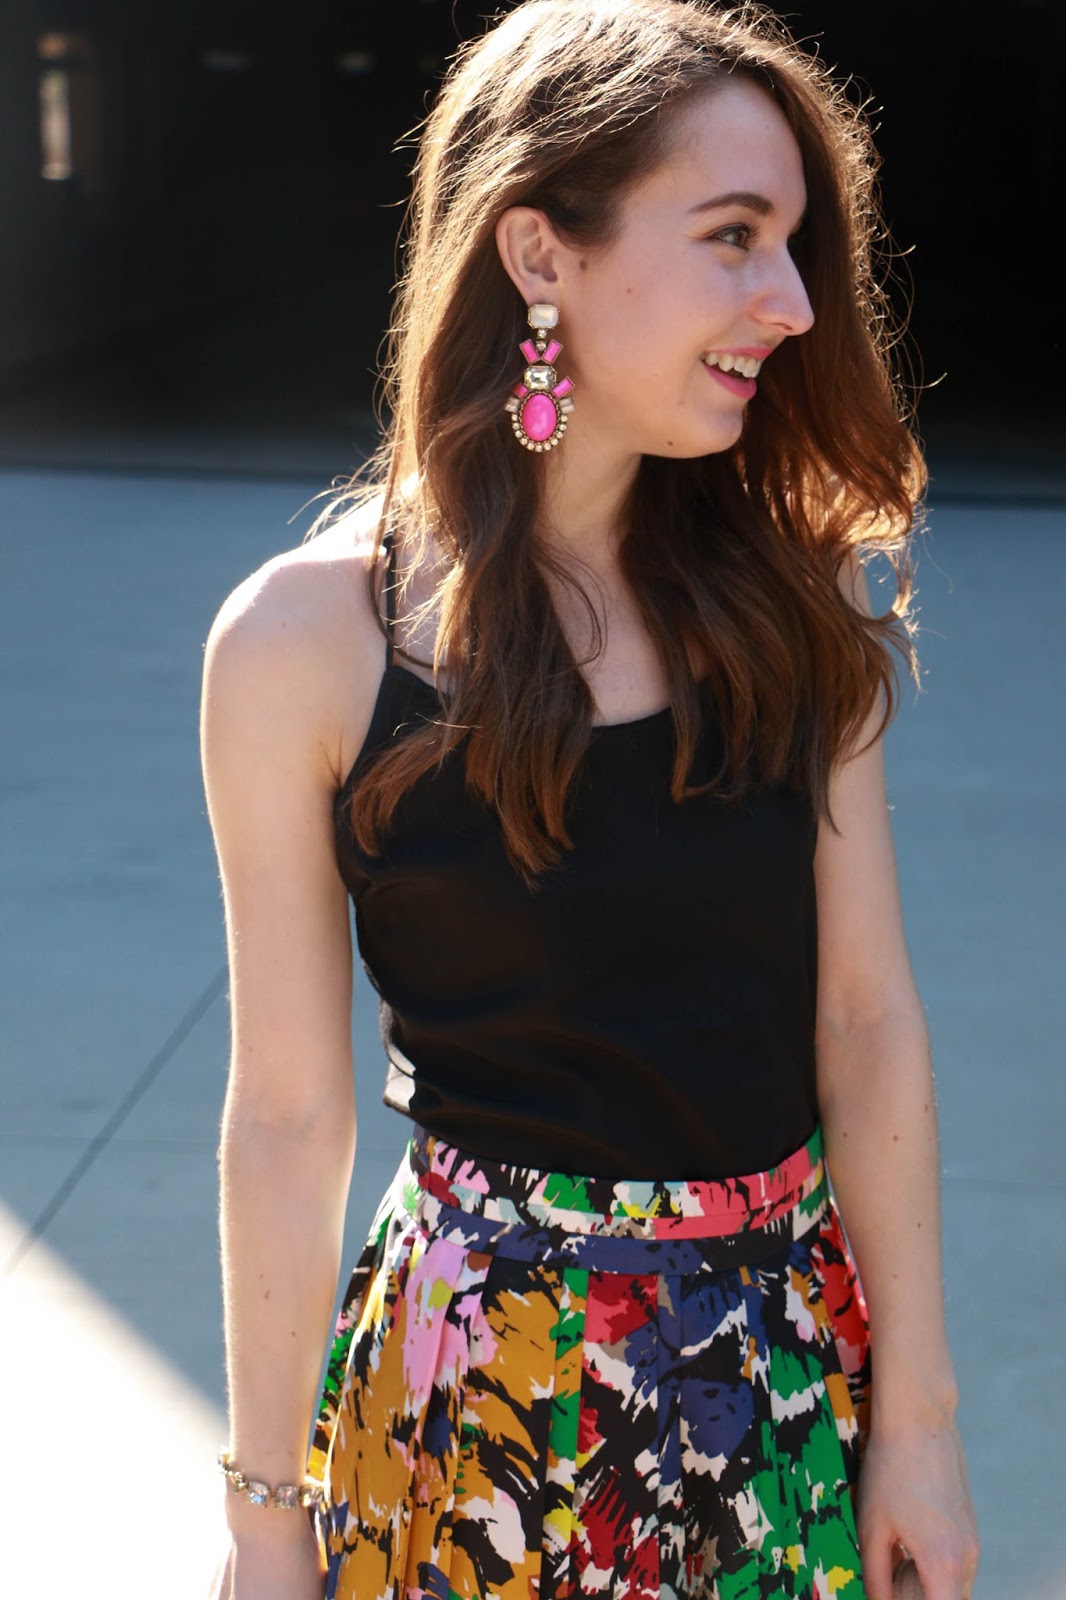 Brushstroke Print Skirt | Caralina Style